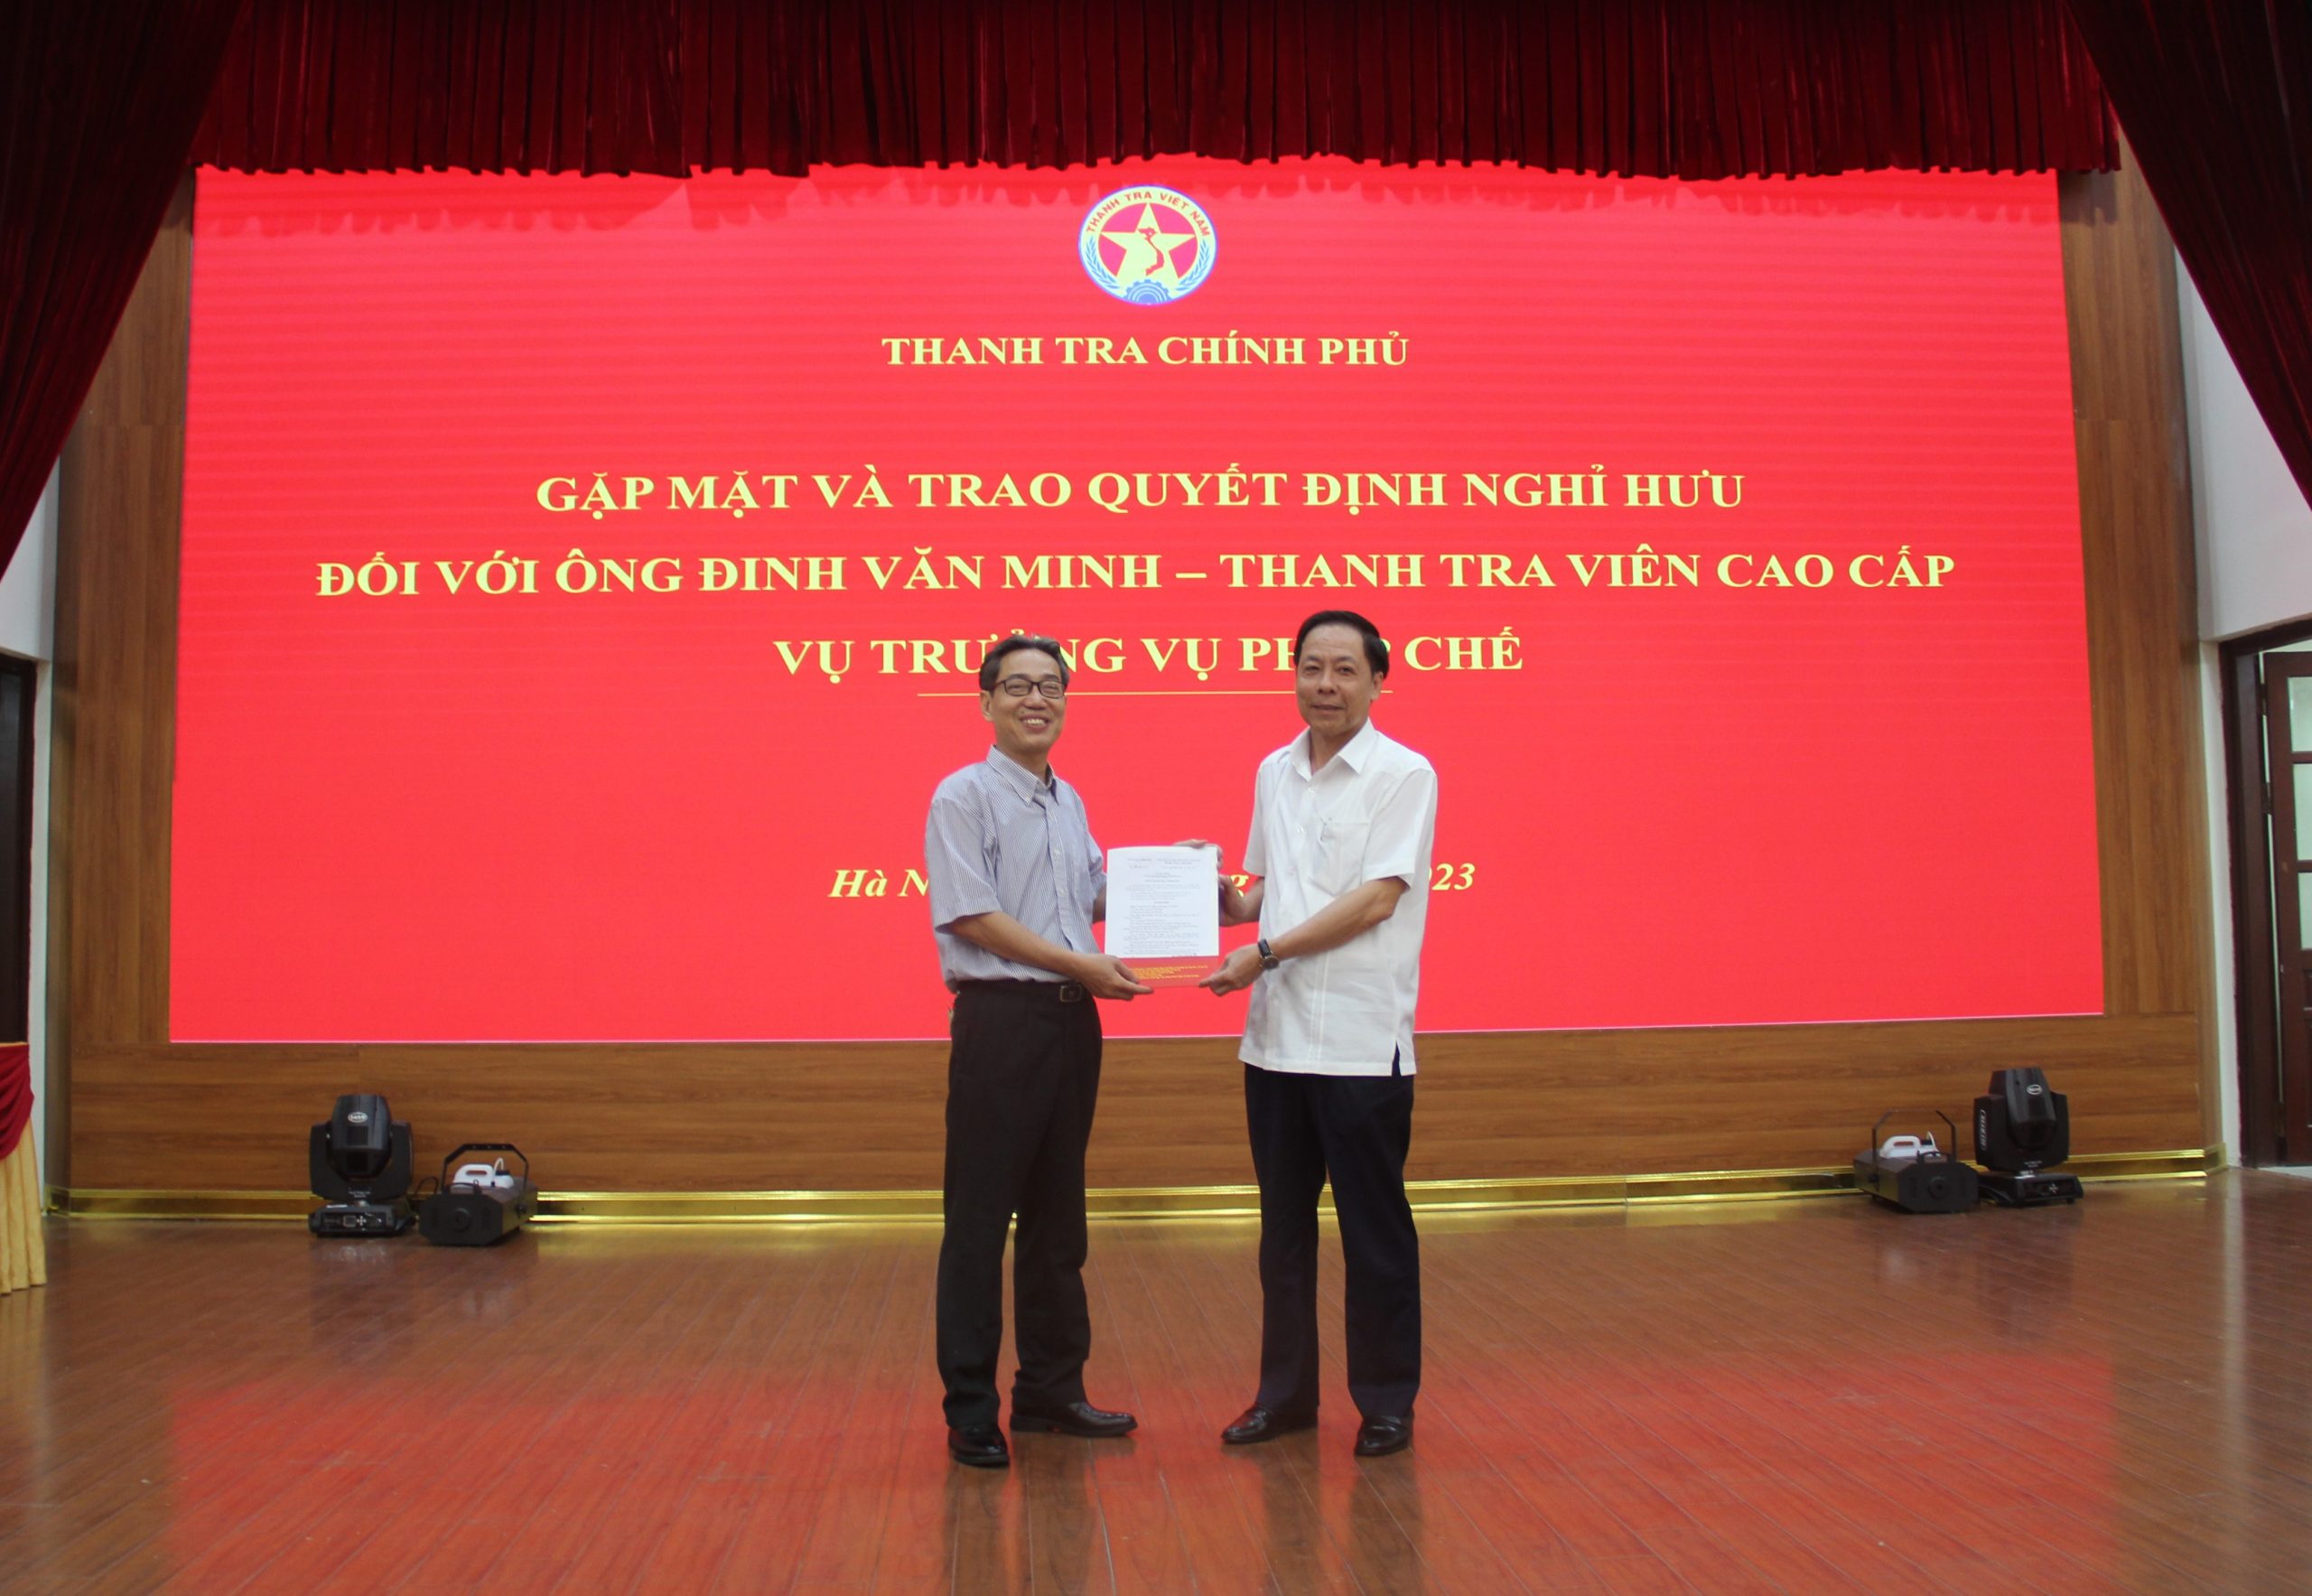 Thanh tra Chính phủ trao quyết định nghỉ hưu cho ông Đinh Văn Minh